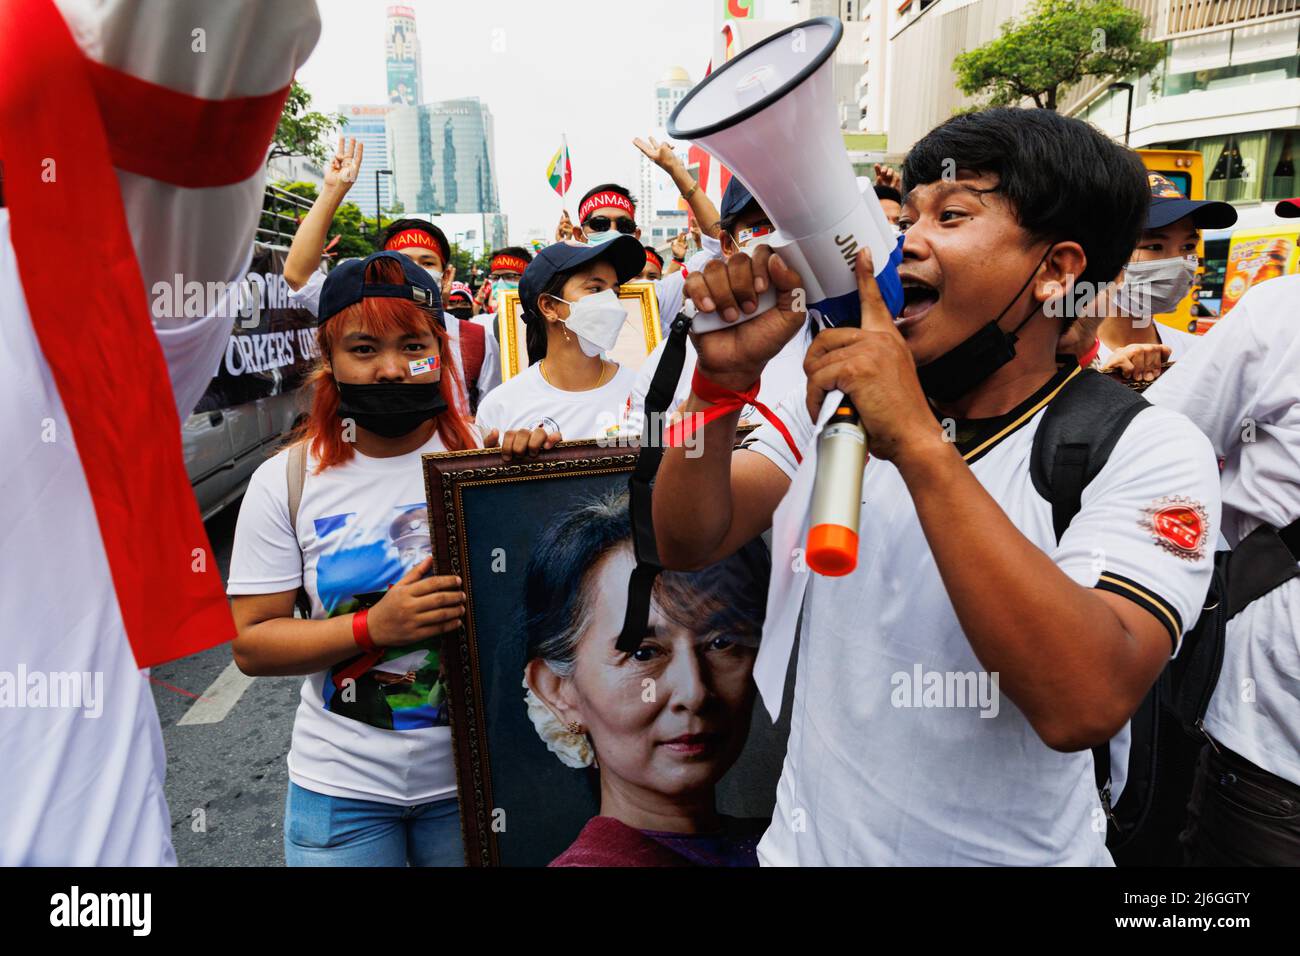 Während der Demonstration sah man einen in Myanmar demonstrierten Redner auf einem Megaphon. Die Arbeitergewerkschaft veranstaltete am Tag der Arbeit in Bangkok, Thailand, eine Parade. An der Parade nahmen verschiedene Gruppen Teil, darunter die thailändische Arbeitergruppe, die myanmarische Arbeitergruppe und die pro-demokratische Gruppe. Sie versammelten sich an der Ratchaprosong Road und marschierten dann zur Kreuzung Pathumwan, Demonstranten forderten Wohlfahrt, faire Zinszahlungen und auch Demokratie (einschließlich Thailand und Myanmar). (Foto von Varuth Pongsapipatt / SOPA Images/Sipa USA) Stockfoto